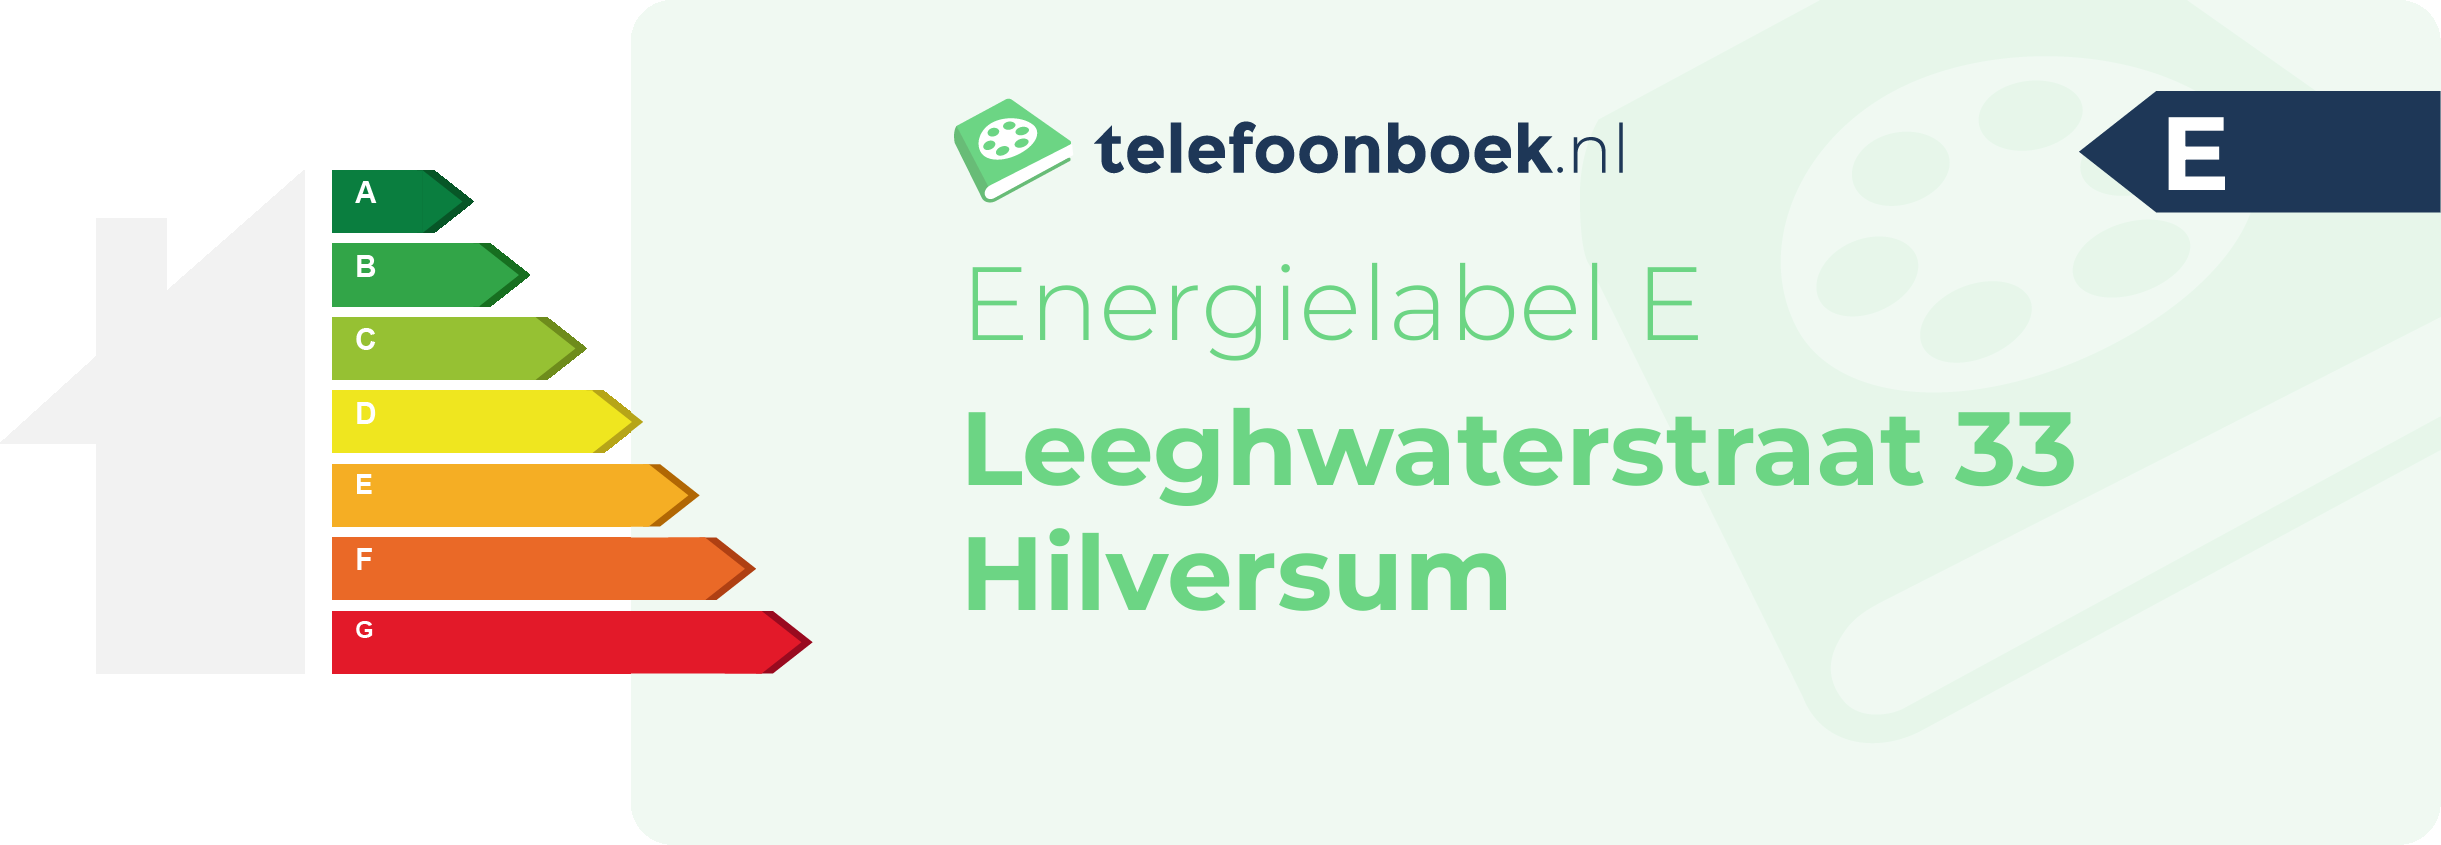 Energielabel Leeghwaterstraat 33 Hilversum